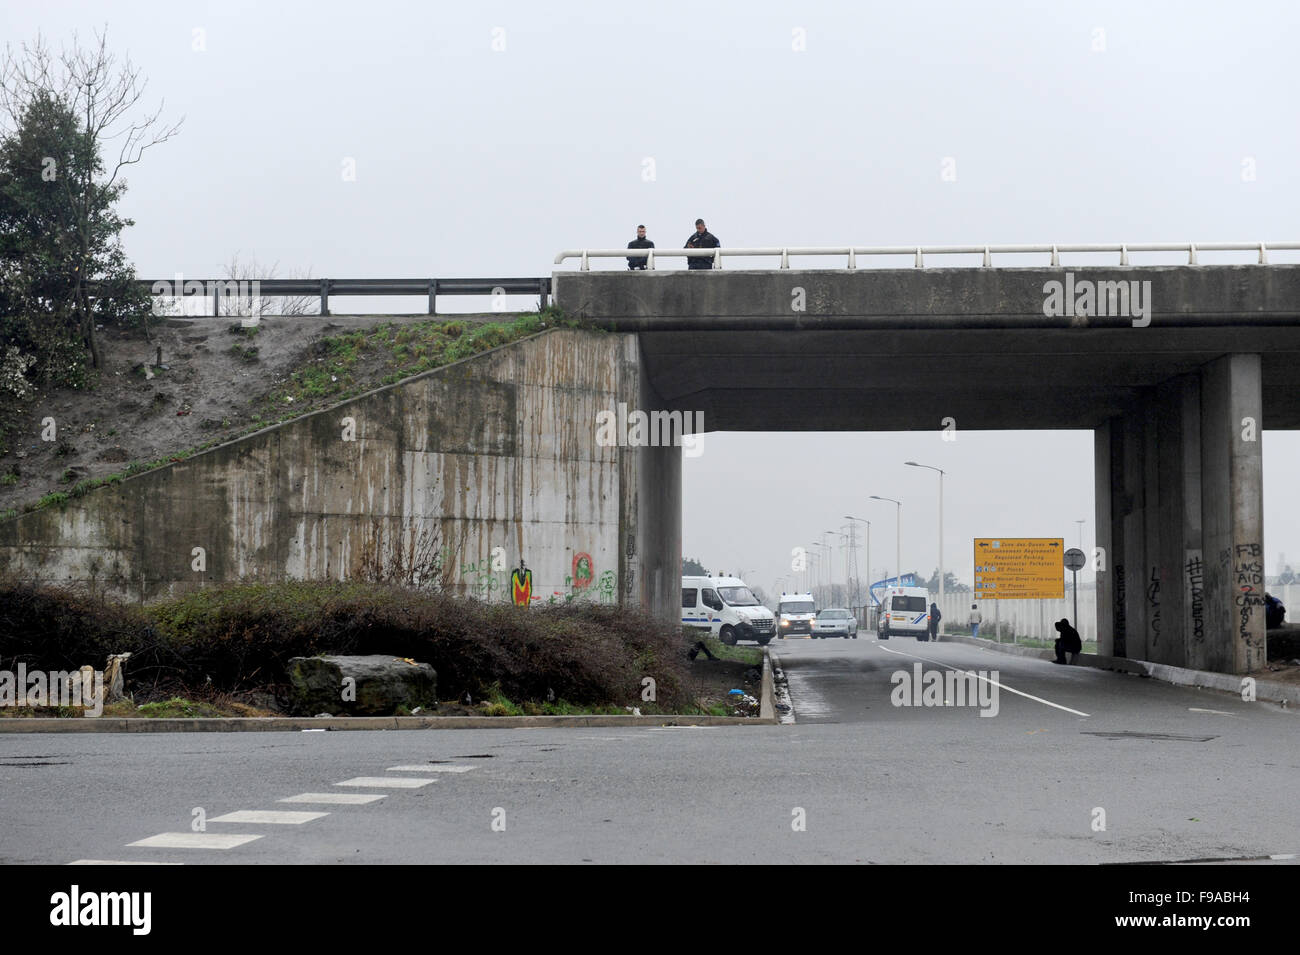 La Jungle, Calais, France. Les réfugiés et les migrants flâner par l'entrée du camp par l'autoroute gardé par des policiers Banque D'Images